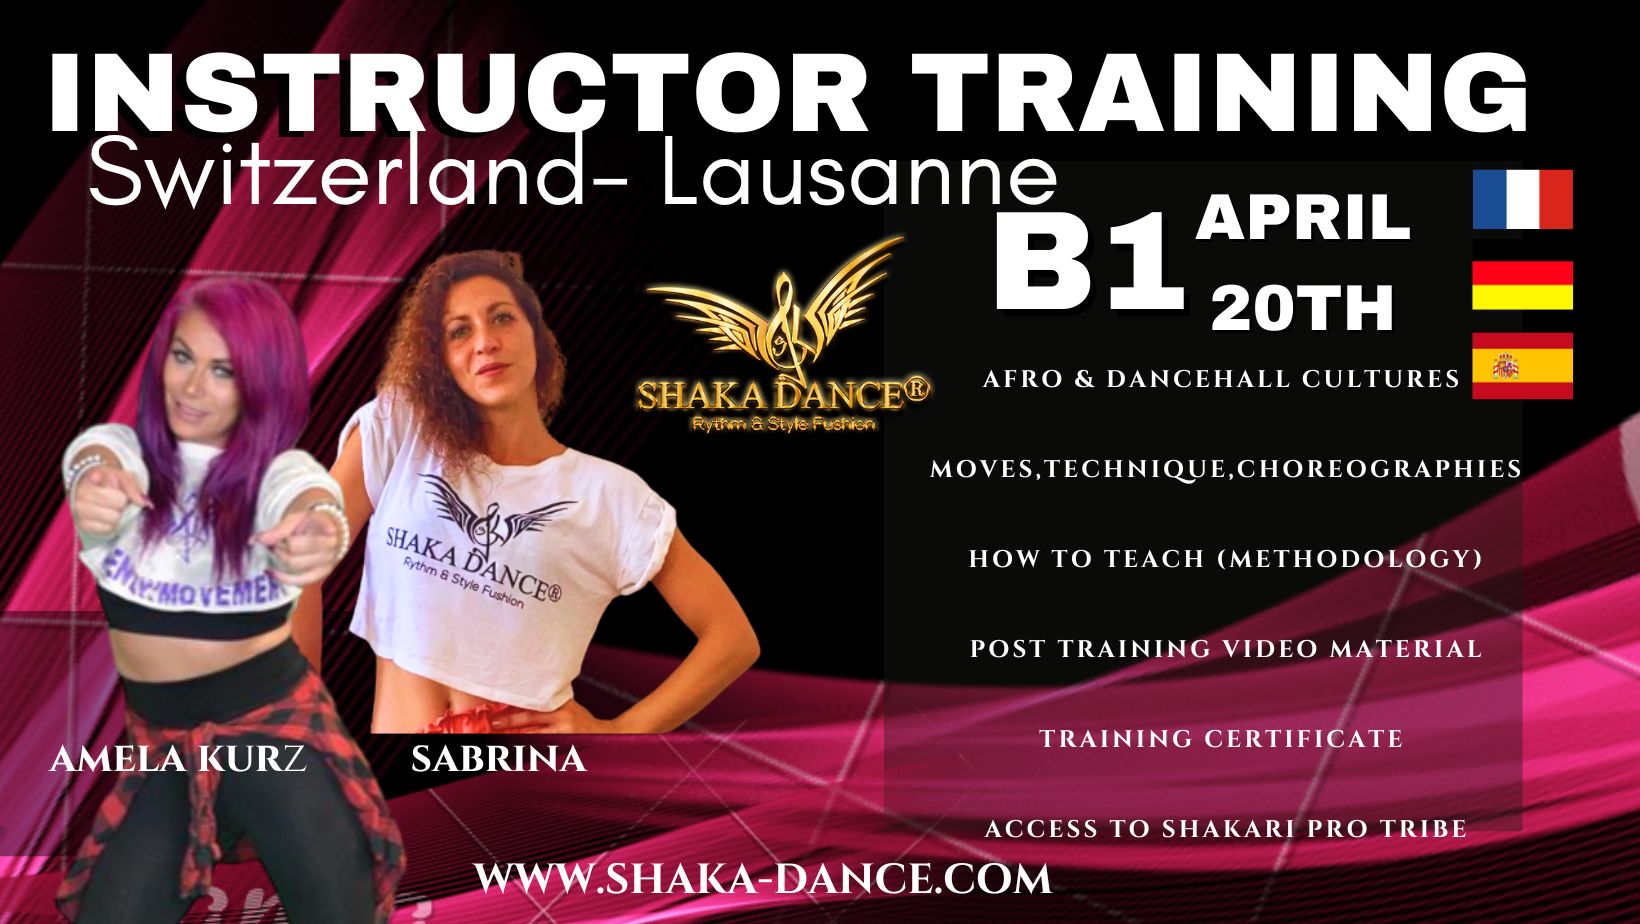 SHAKA DANCE® B1 Instructor Training Switzerland-Lausanne